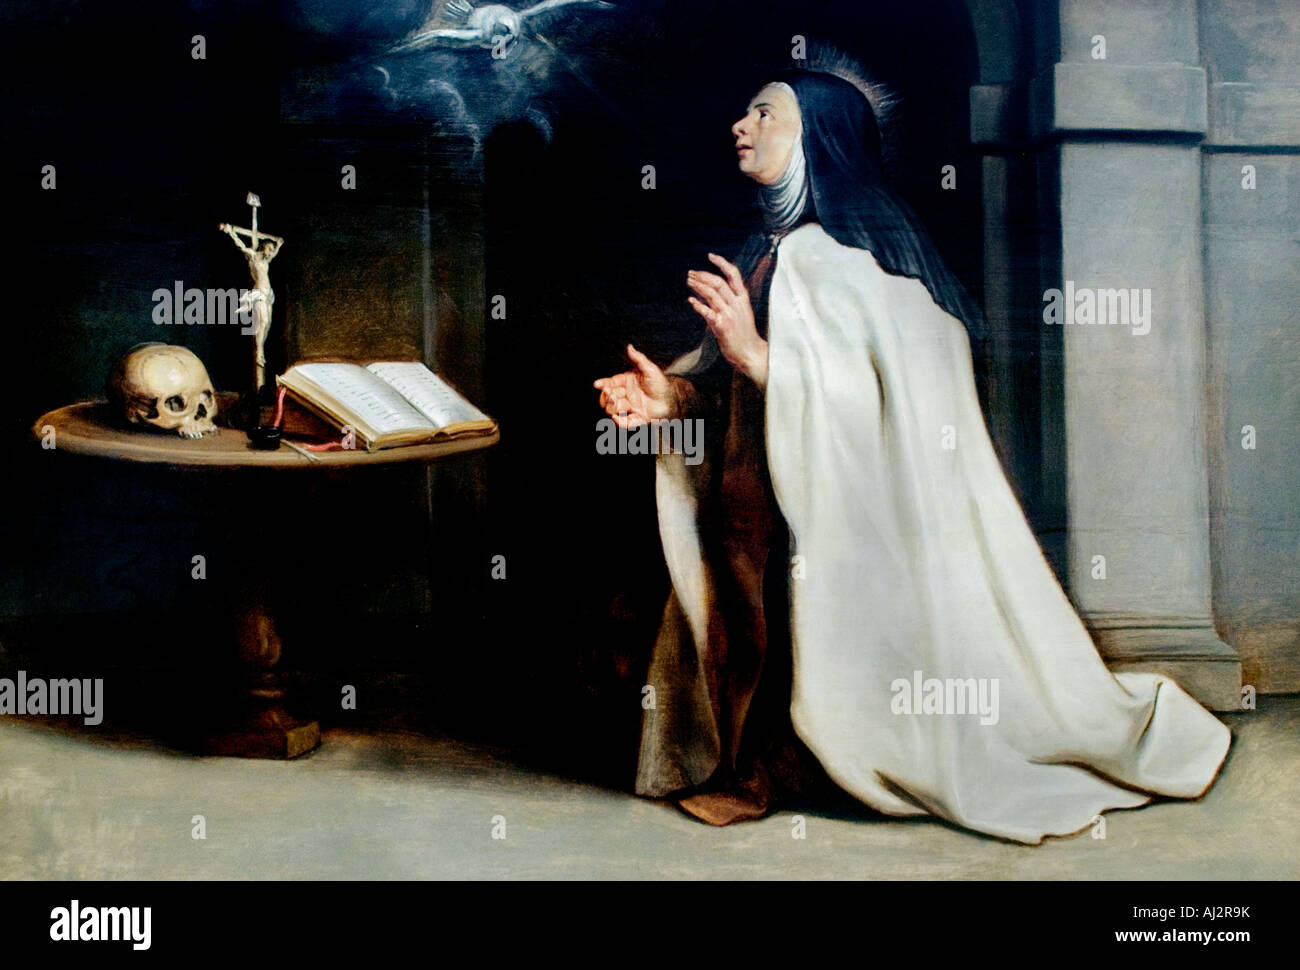 Heilige Teresa von Avila s Vision of the Dove von Rubens 1577-1640 flämischen Belgien Belgien Stockfoto